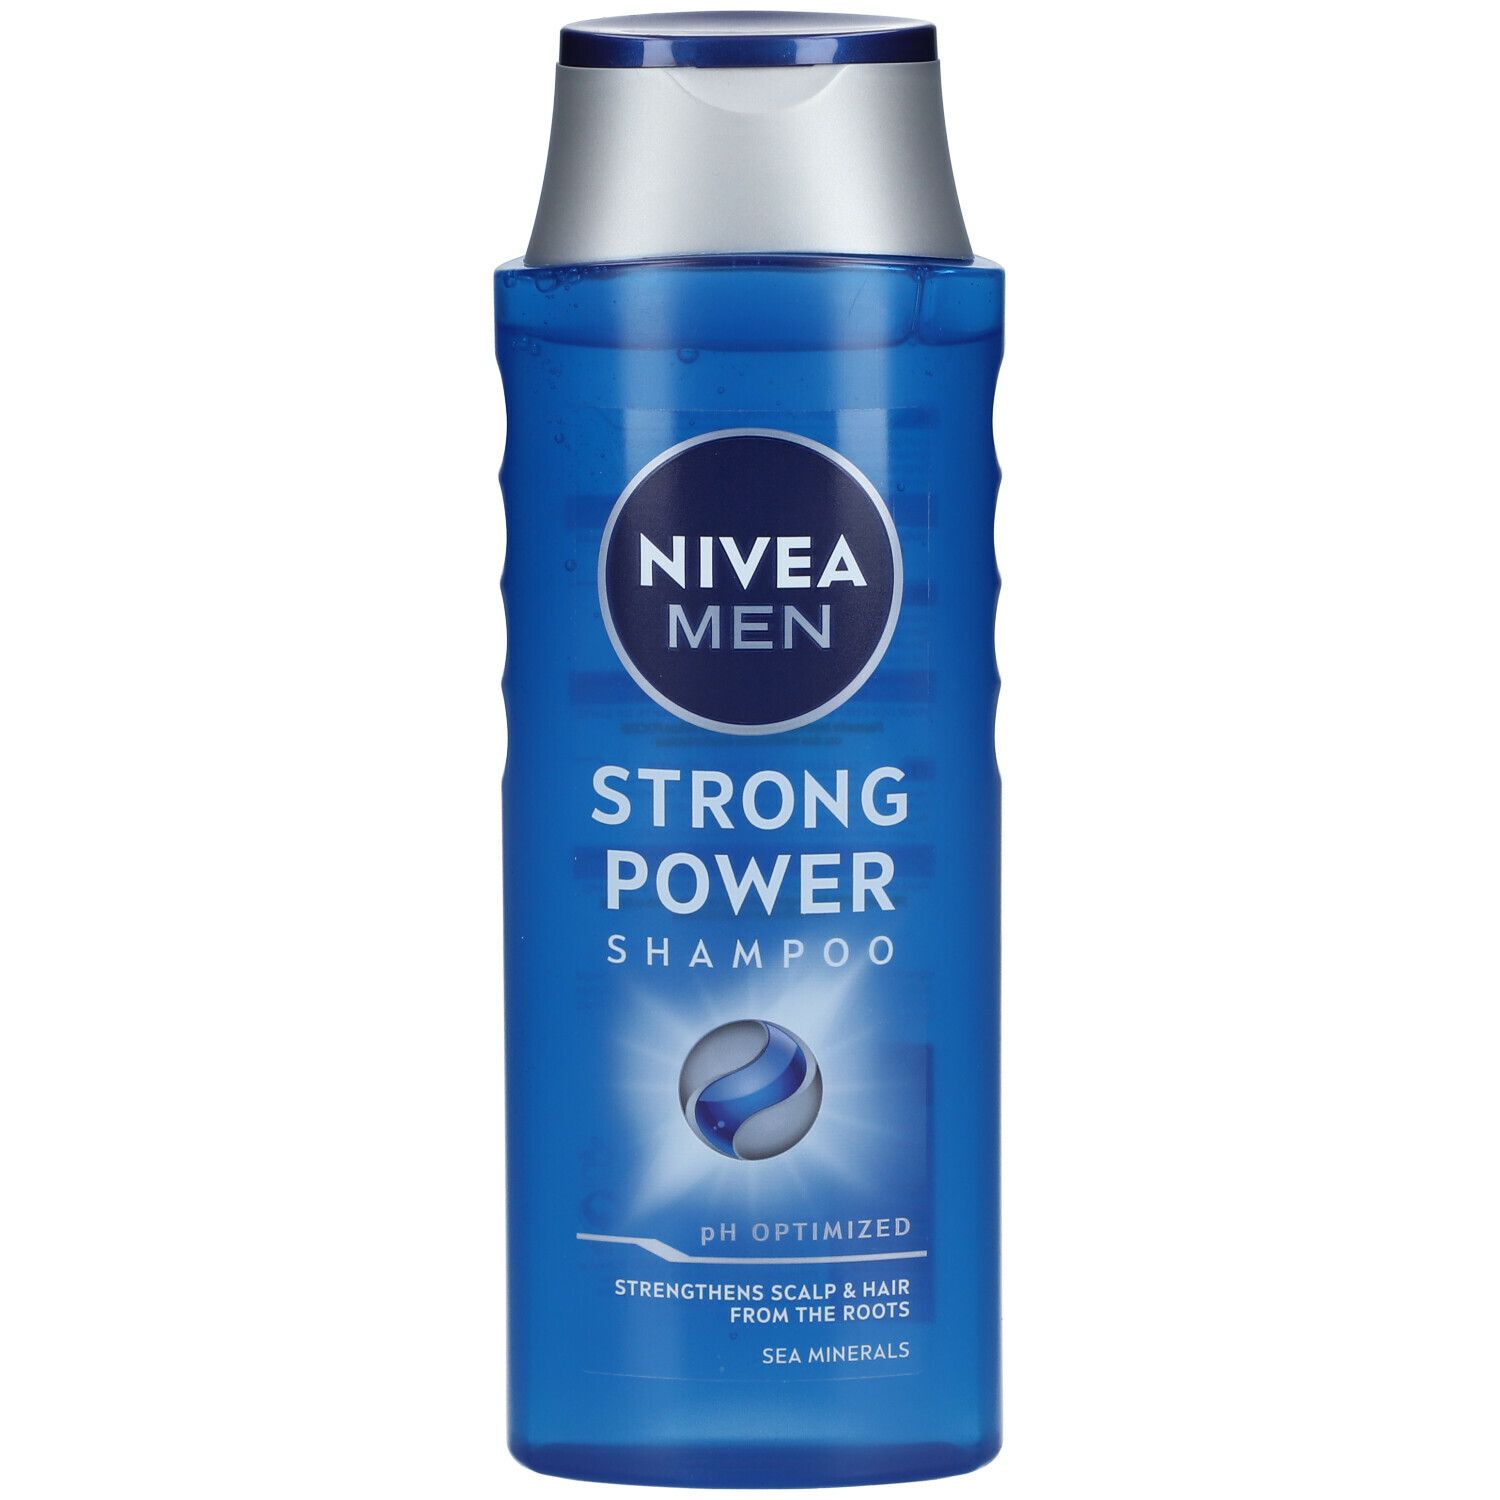 Nivea MEN Shampooing Strong Power